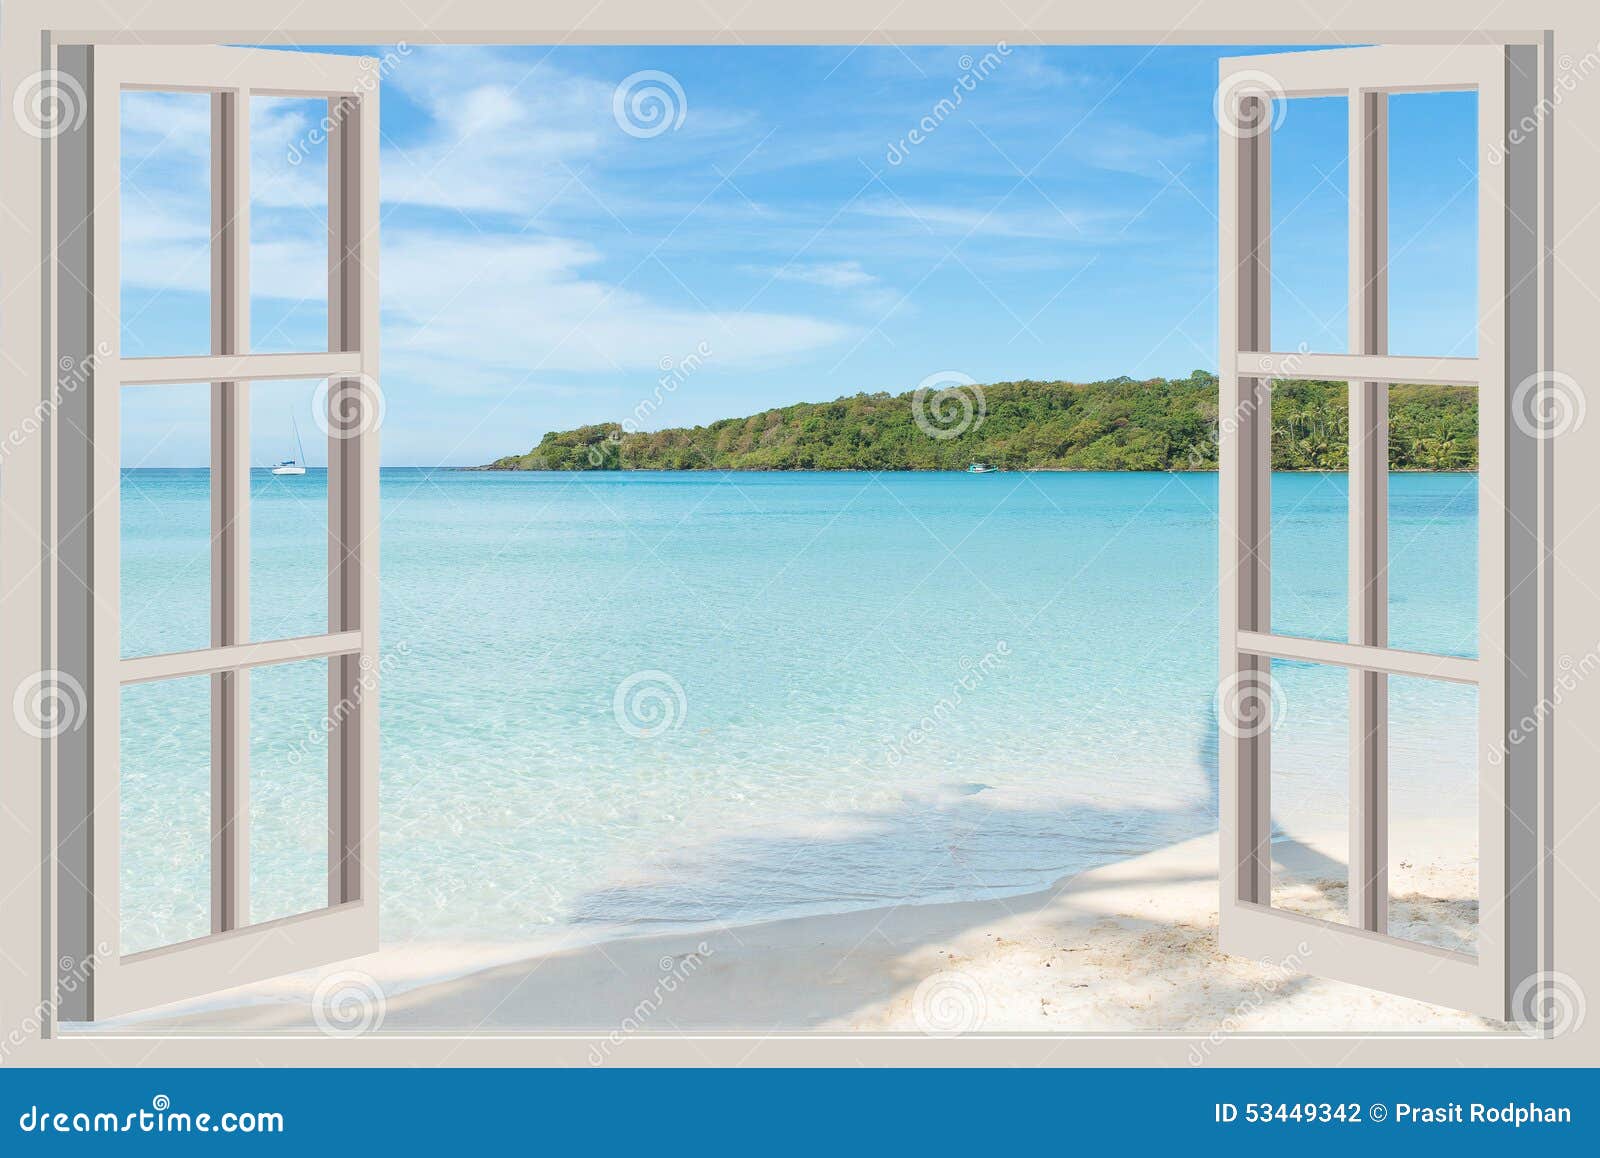 Sommer Reise Ferien Und Feiertagskonzept Das Offene Fenster Stockfoto Bild Von Sommer Ferien